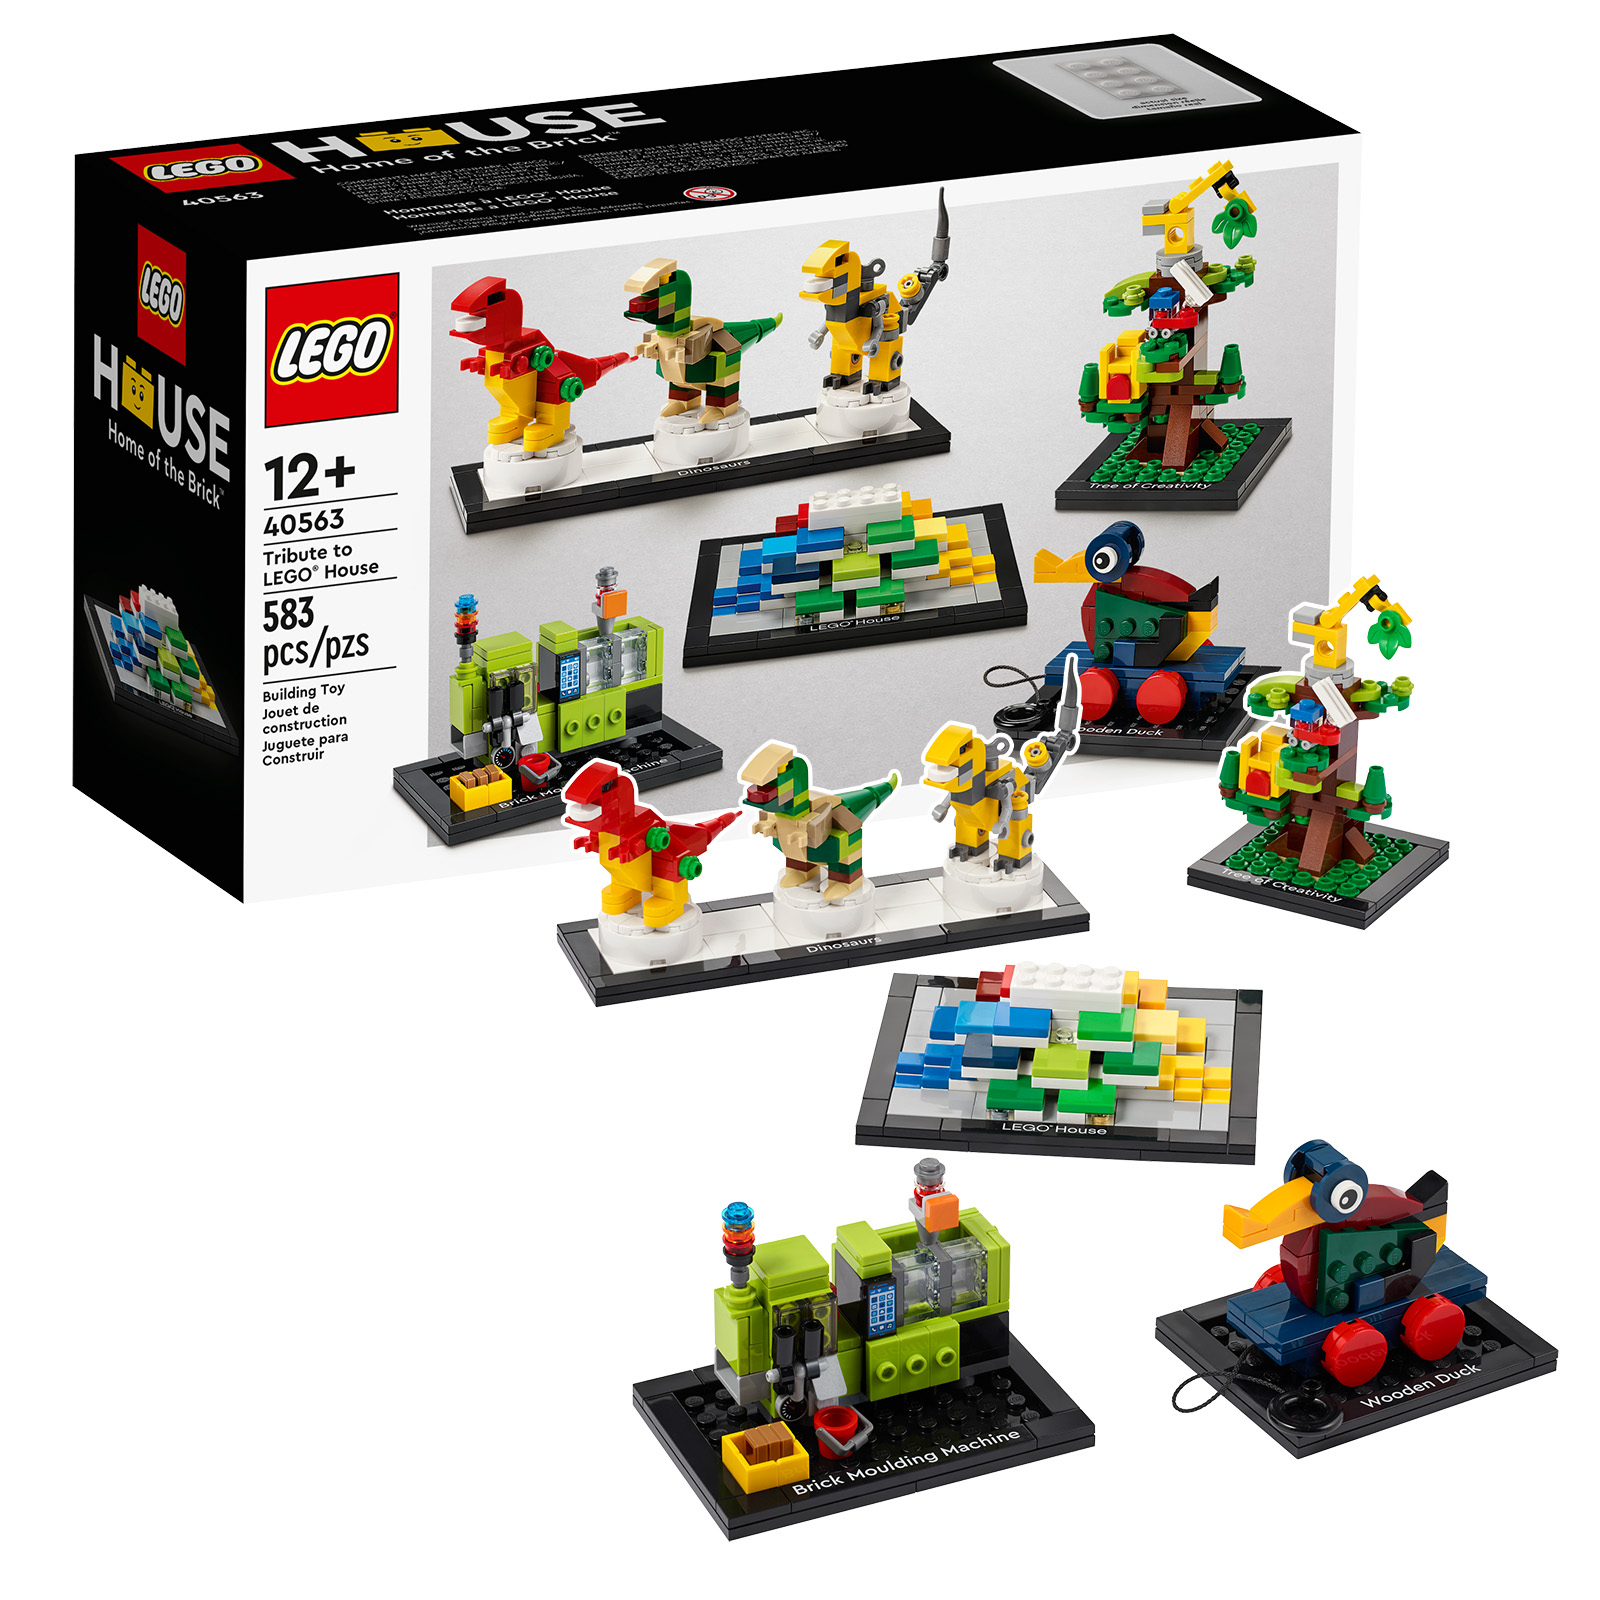 Recordatorio: últimas horas para conseguir una copia del set LEGO 40563 Tribute to LEGO House